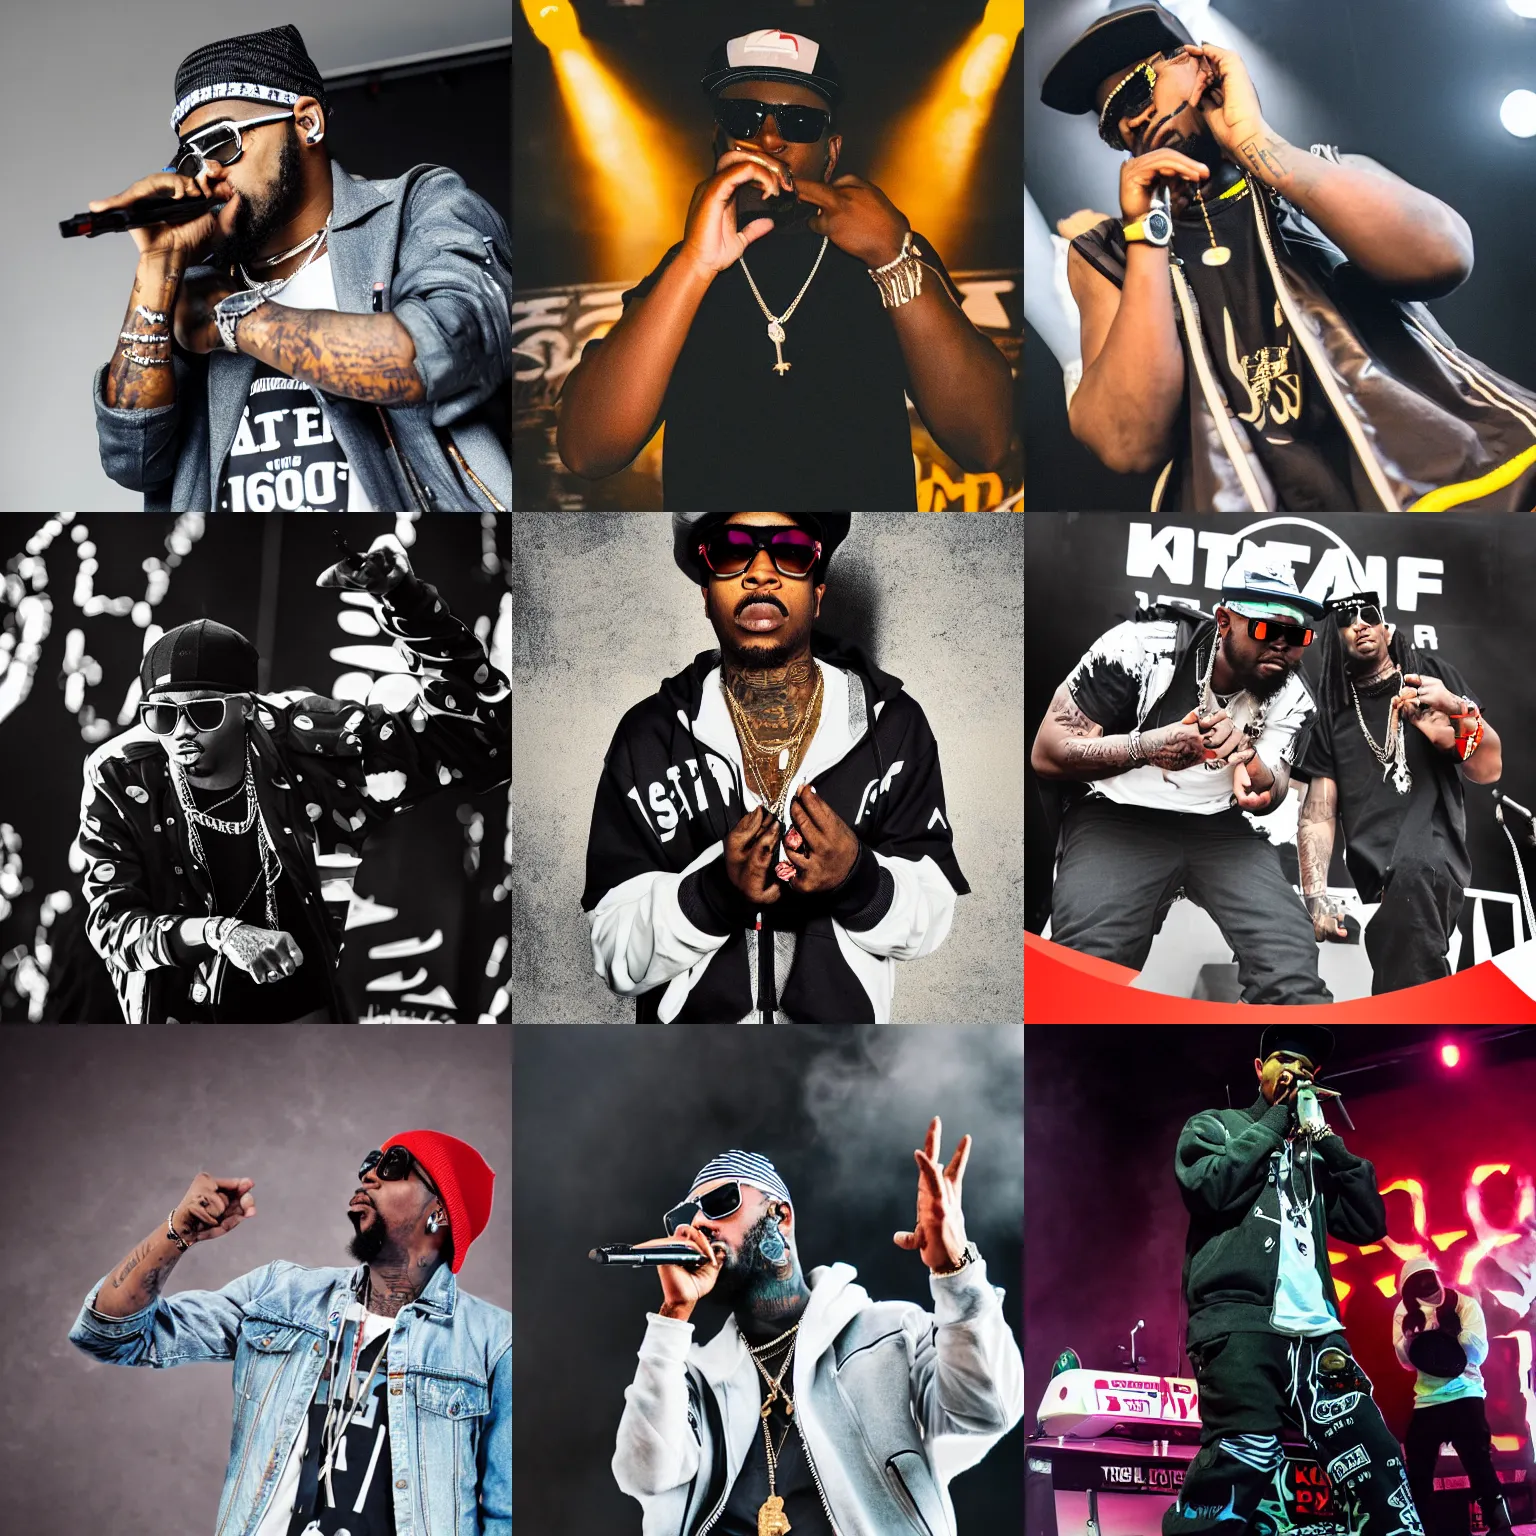 Prompt: gangster rapper on stage, 8k